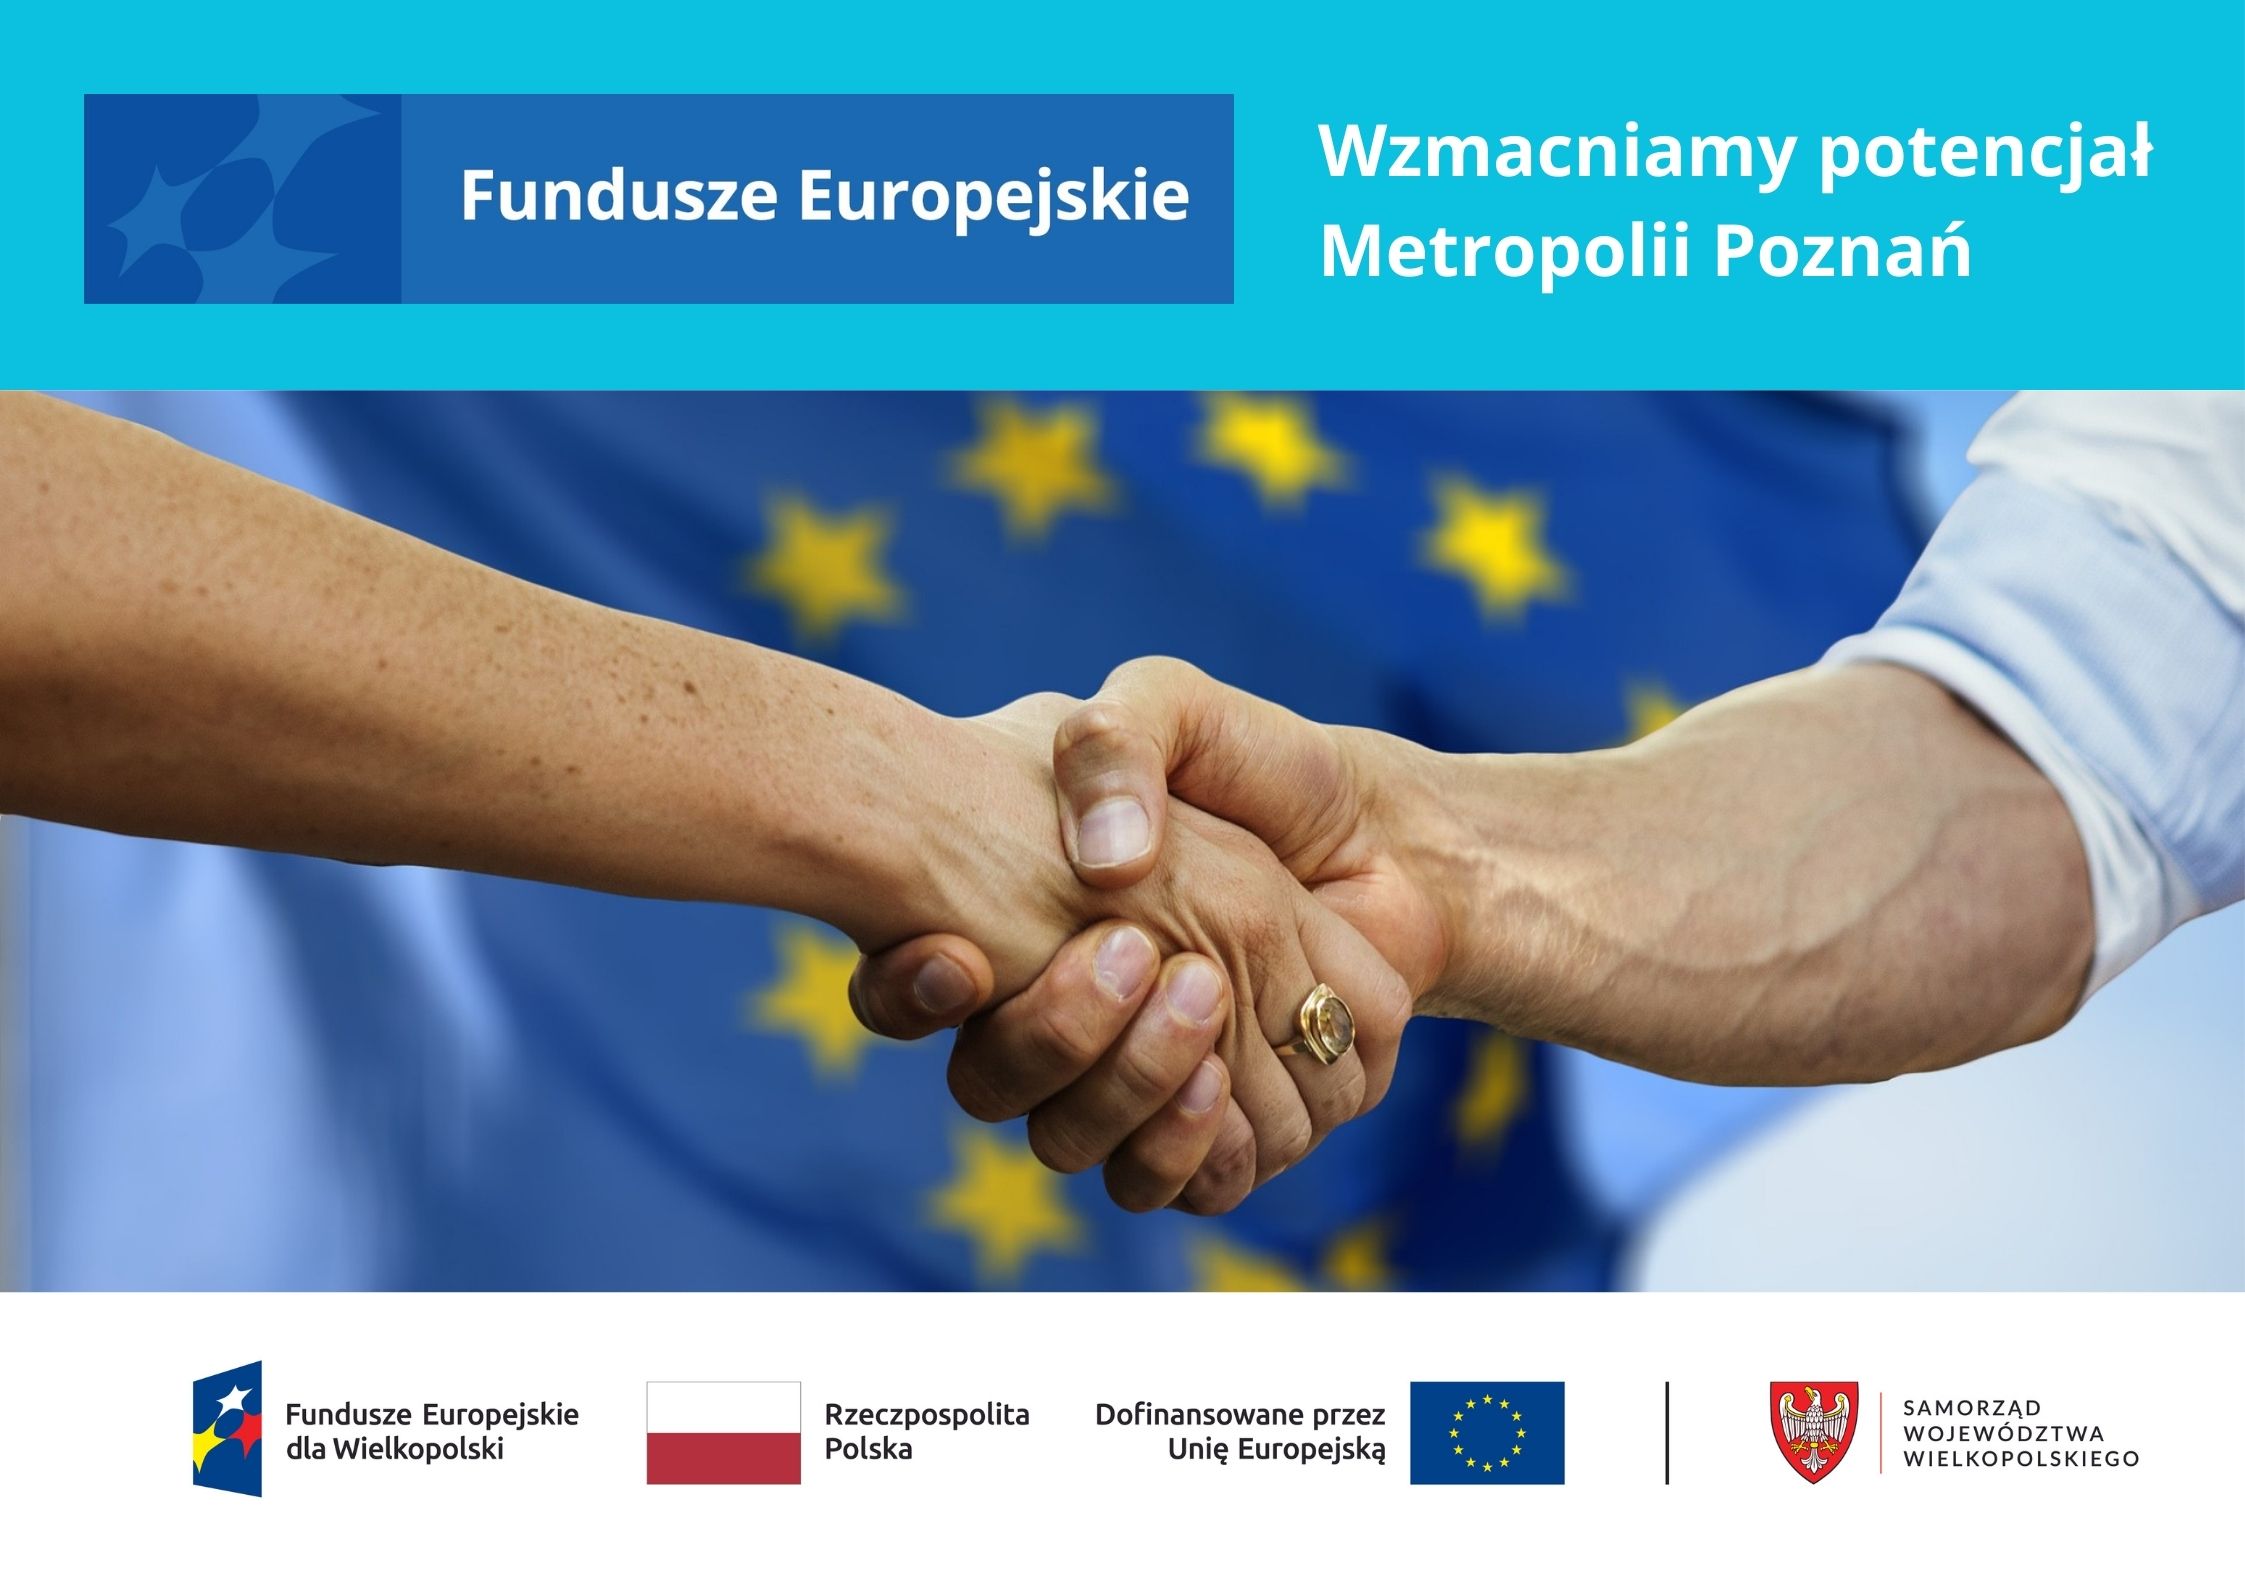 Baner przedstawiający fotografię uścisku dłoni na tle flagi Unii Europejskiej z napisem: Wzmacniamy potencjał Metropolii Poznań